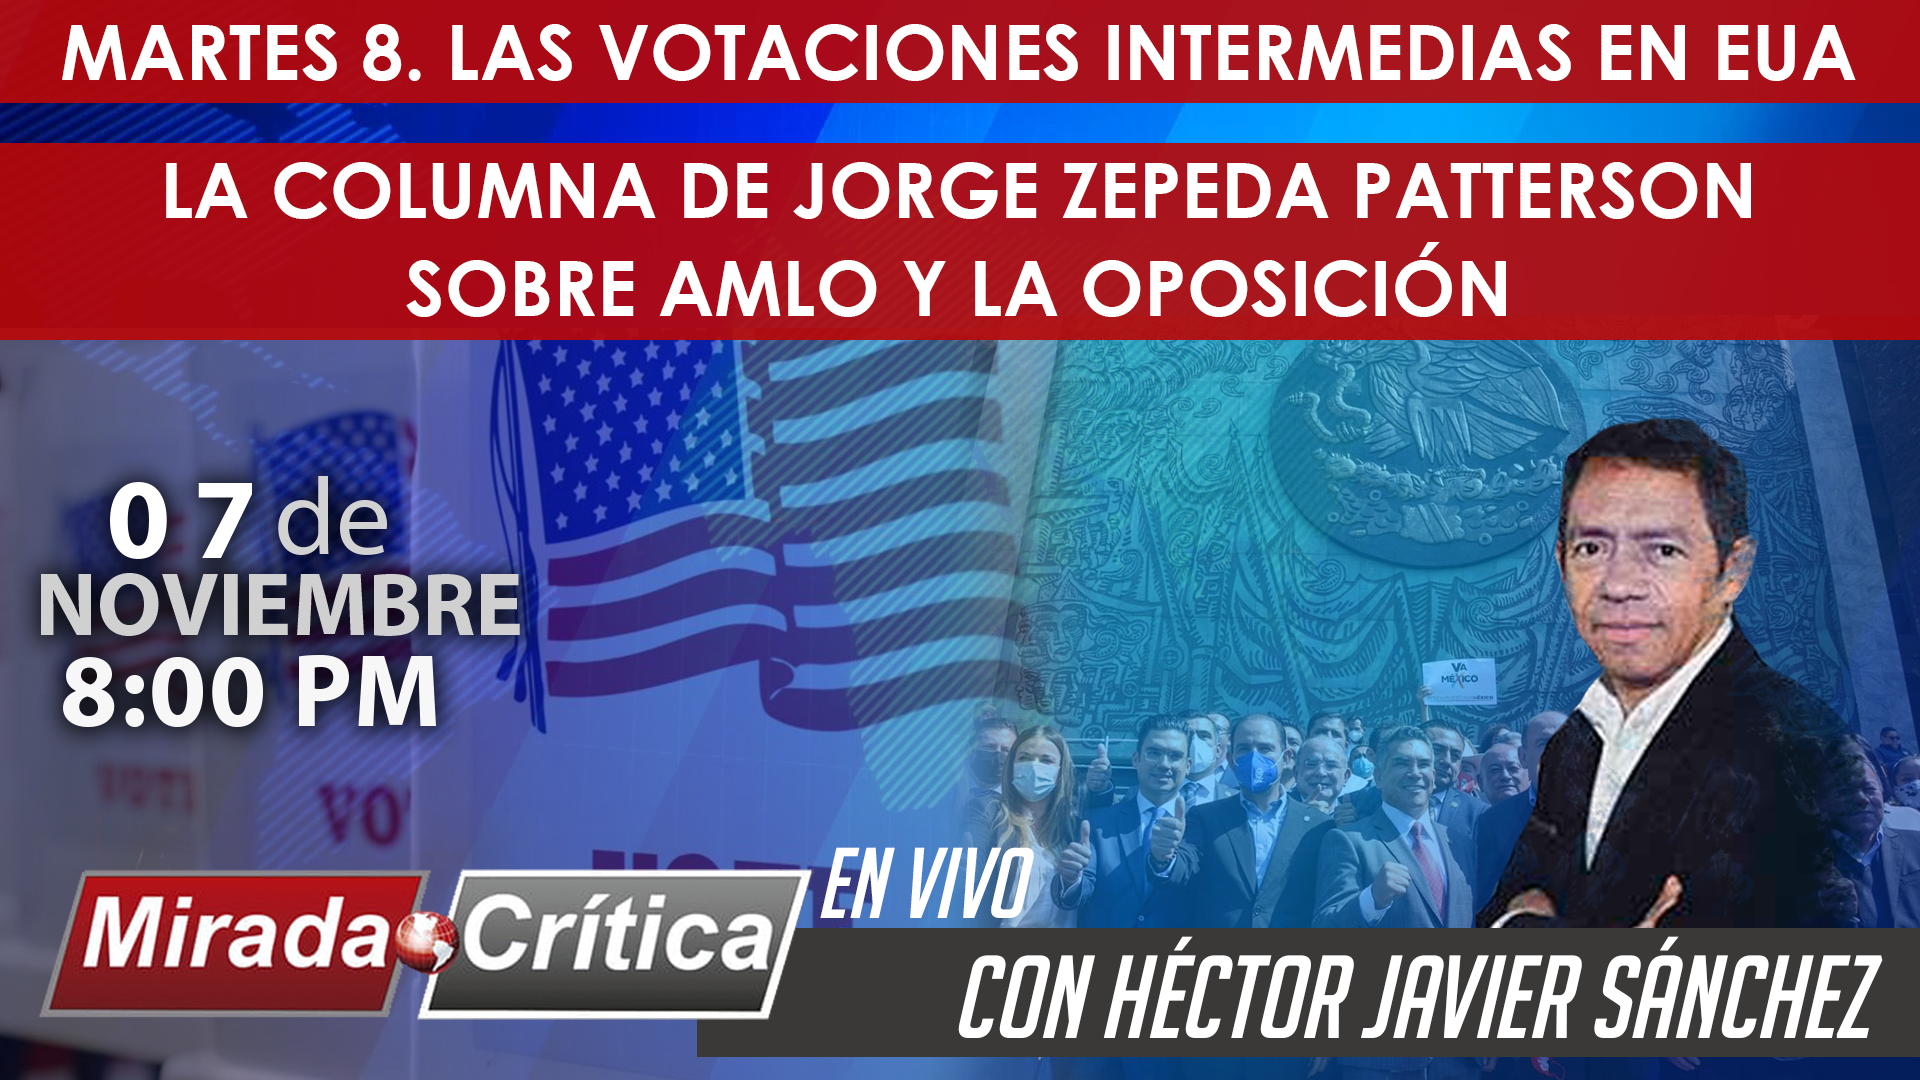 Las votaciones intermedias en EUA / La columna de Jorge Zepeda sobre AMLO y la Oposición - Mirada Crítica